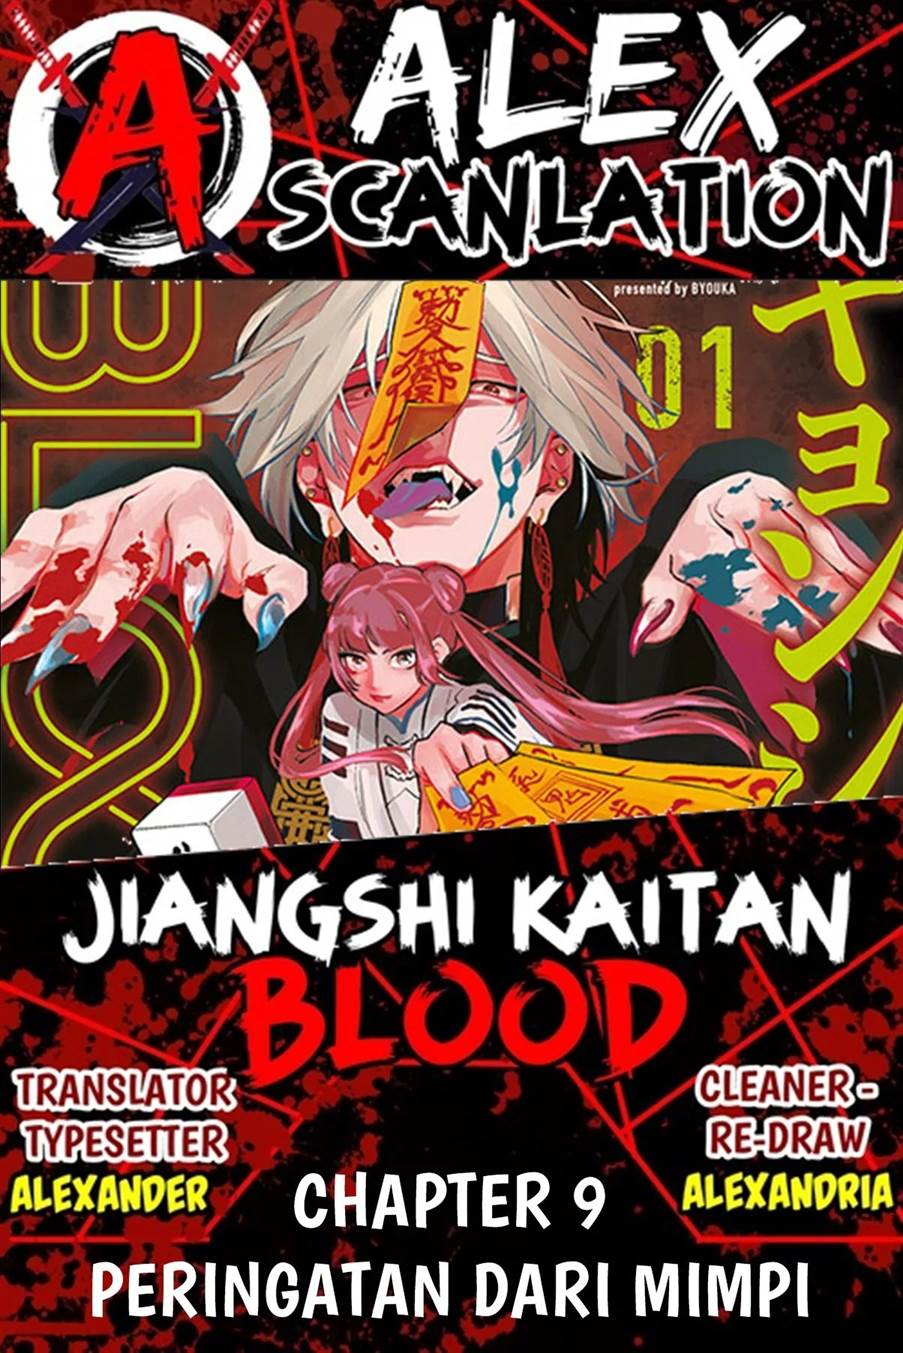 Jiangshi Kaitan BLOOD Chapter 9